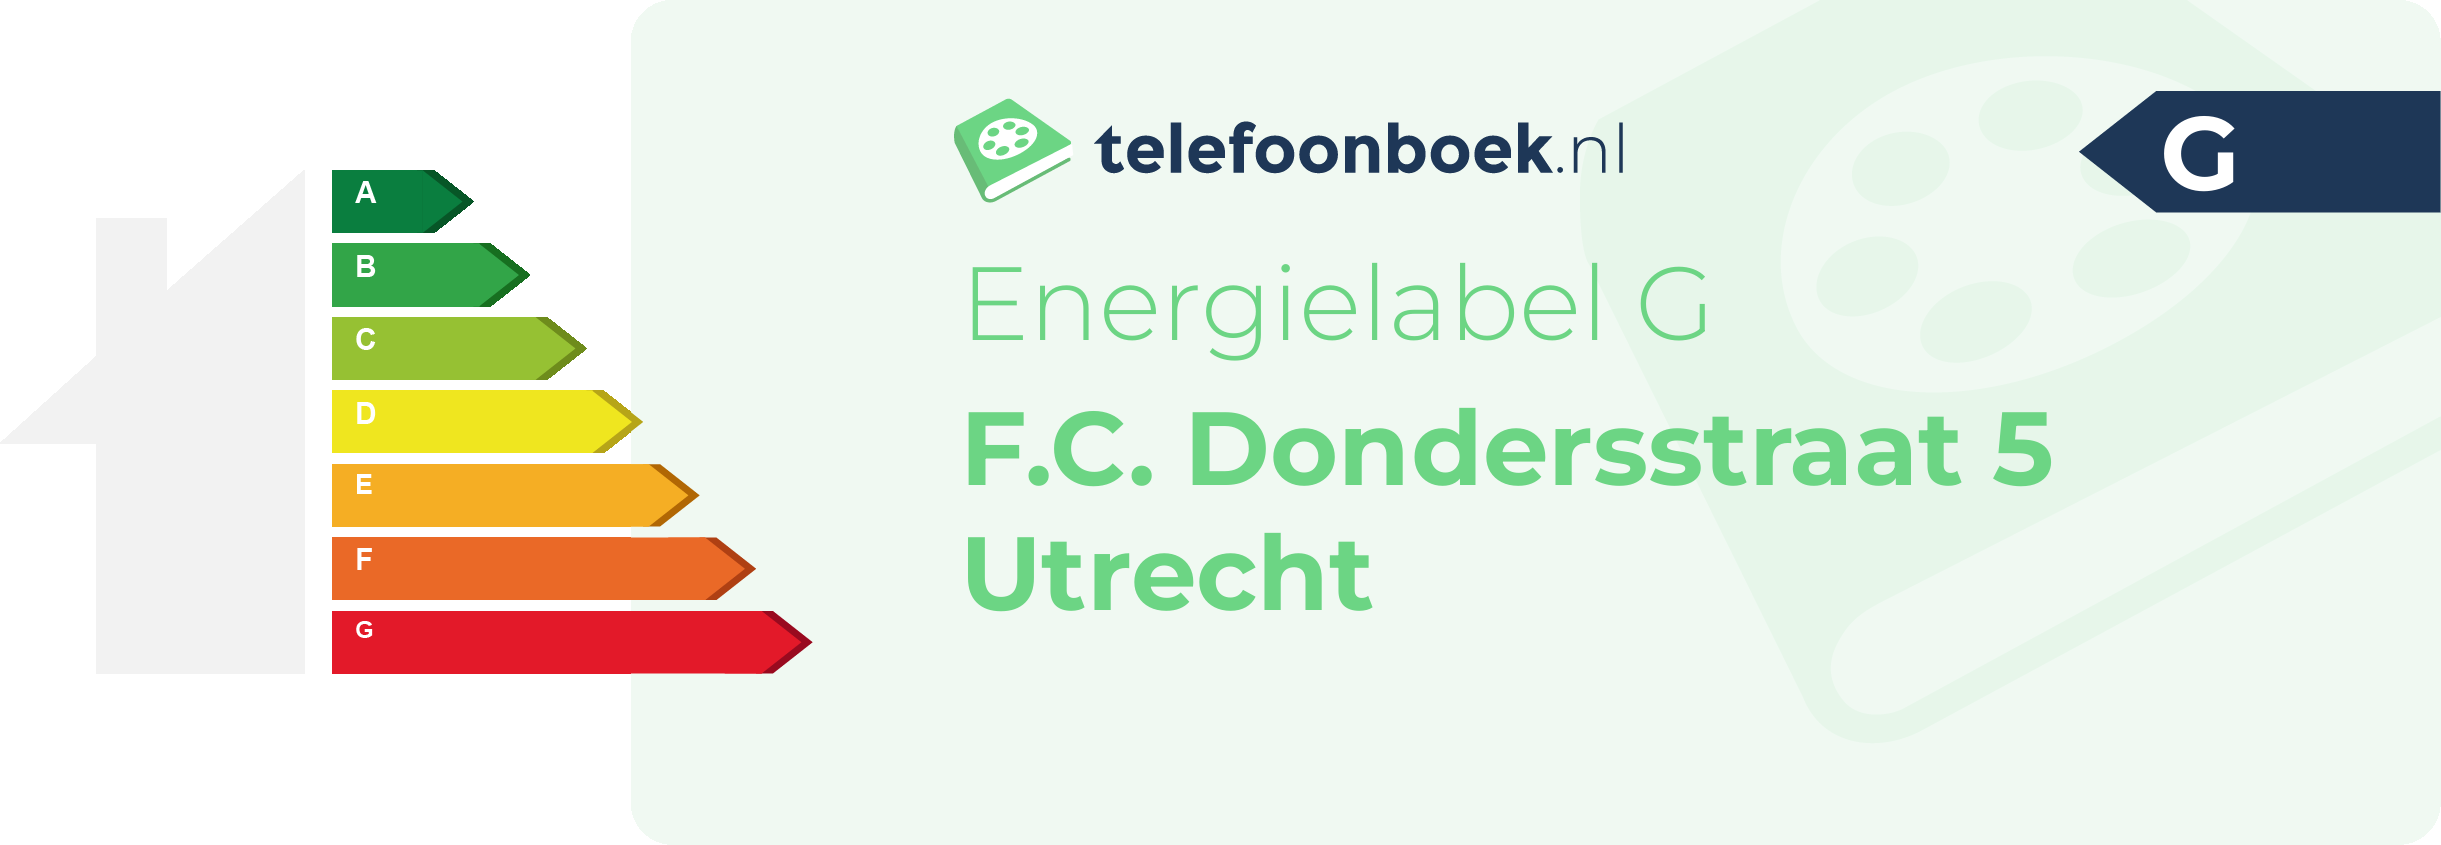 Energielabel F.C. Dondersstraat 5 Utrecht